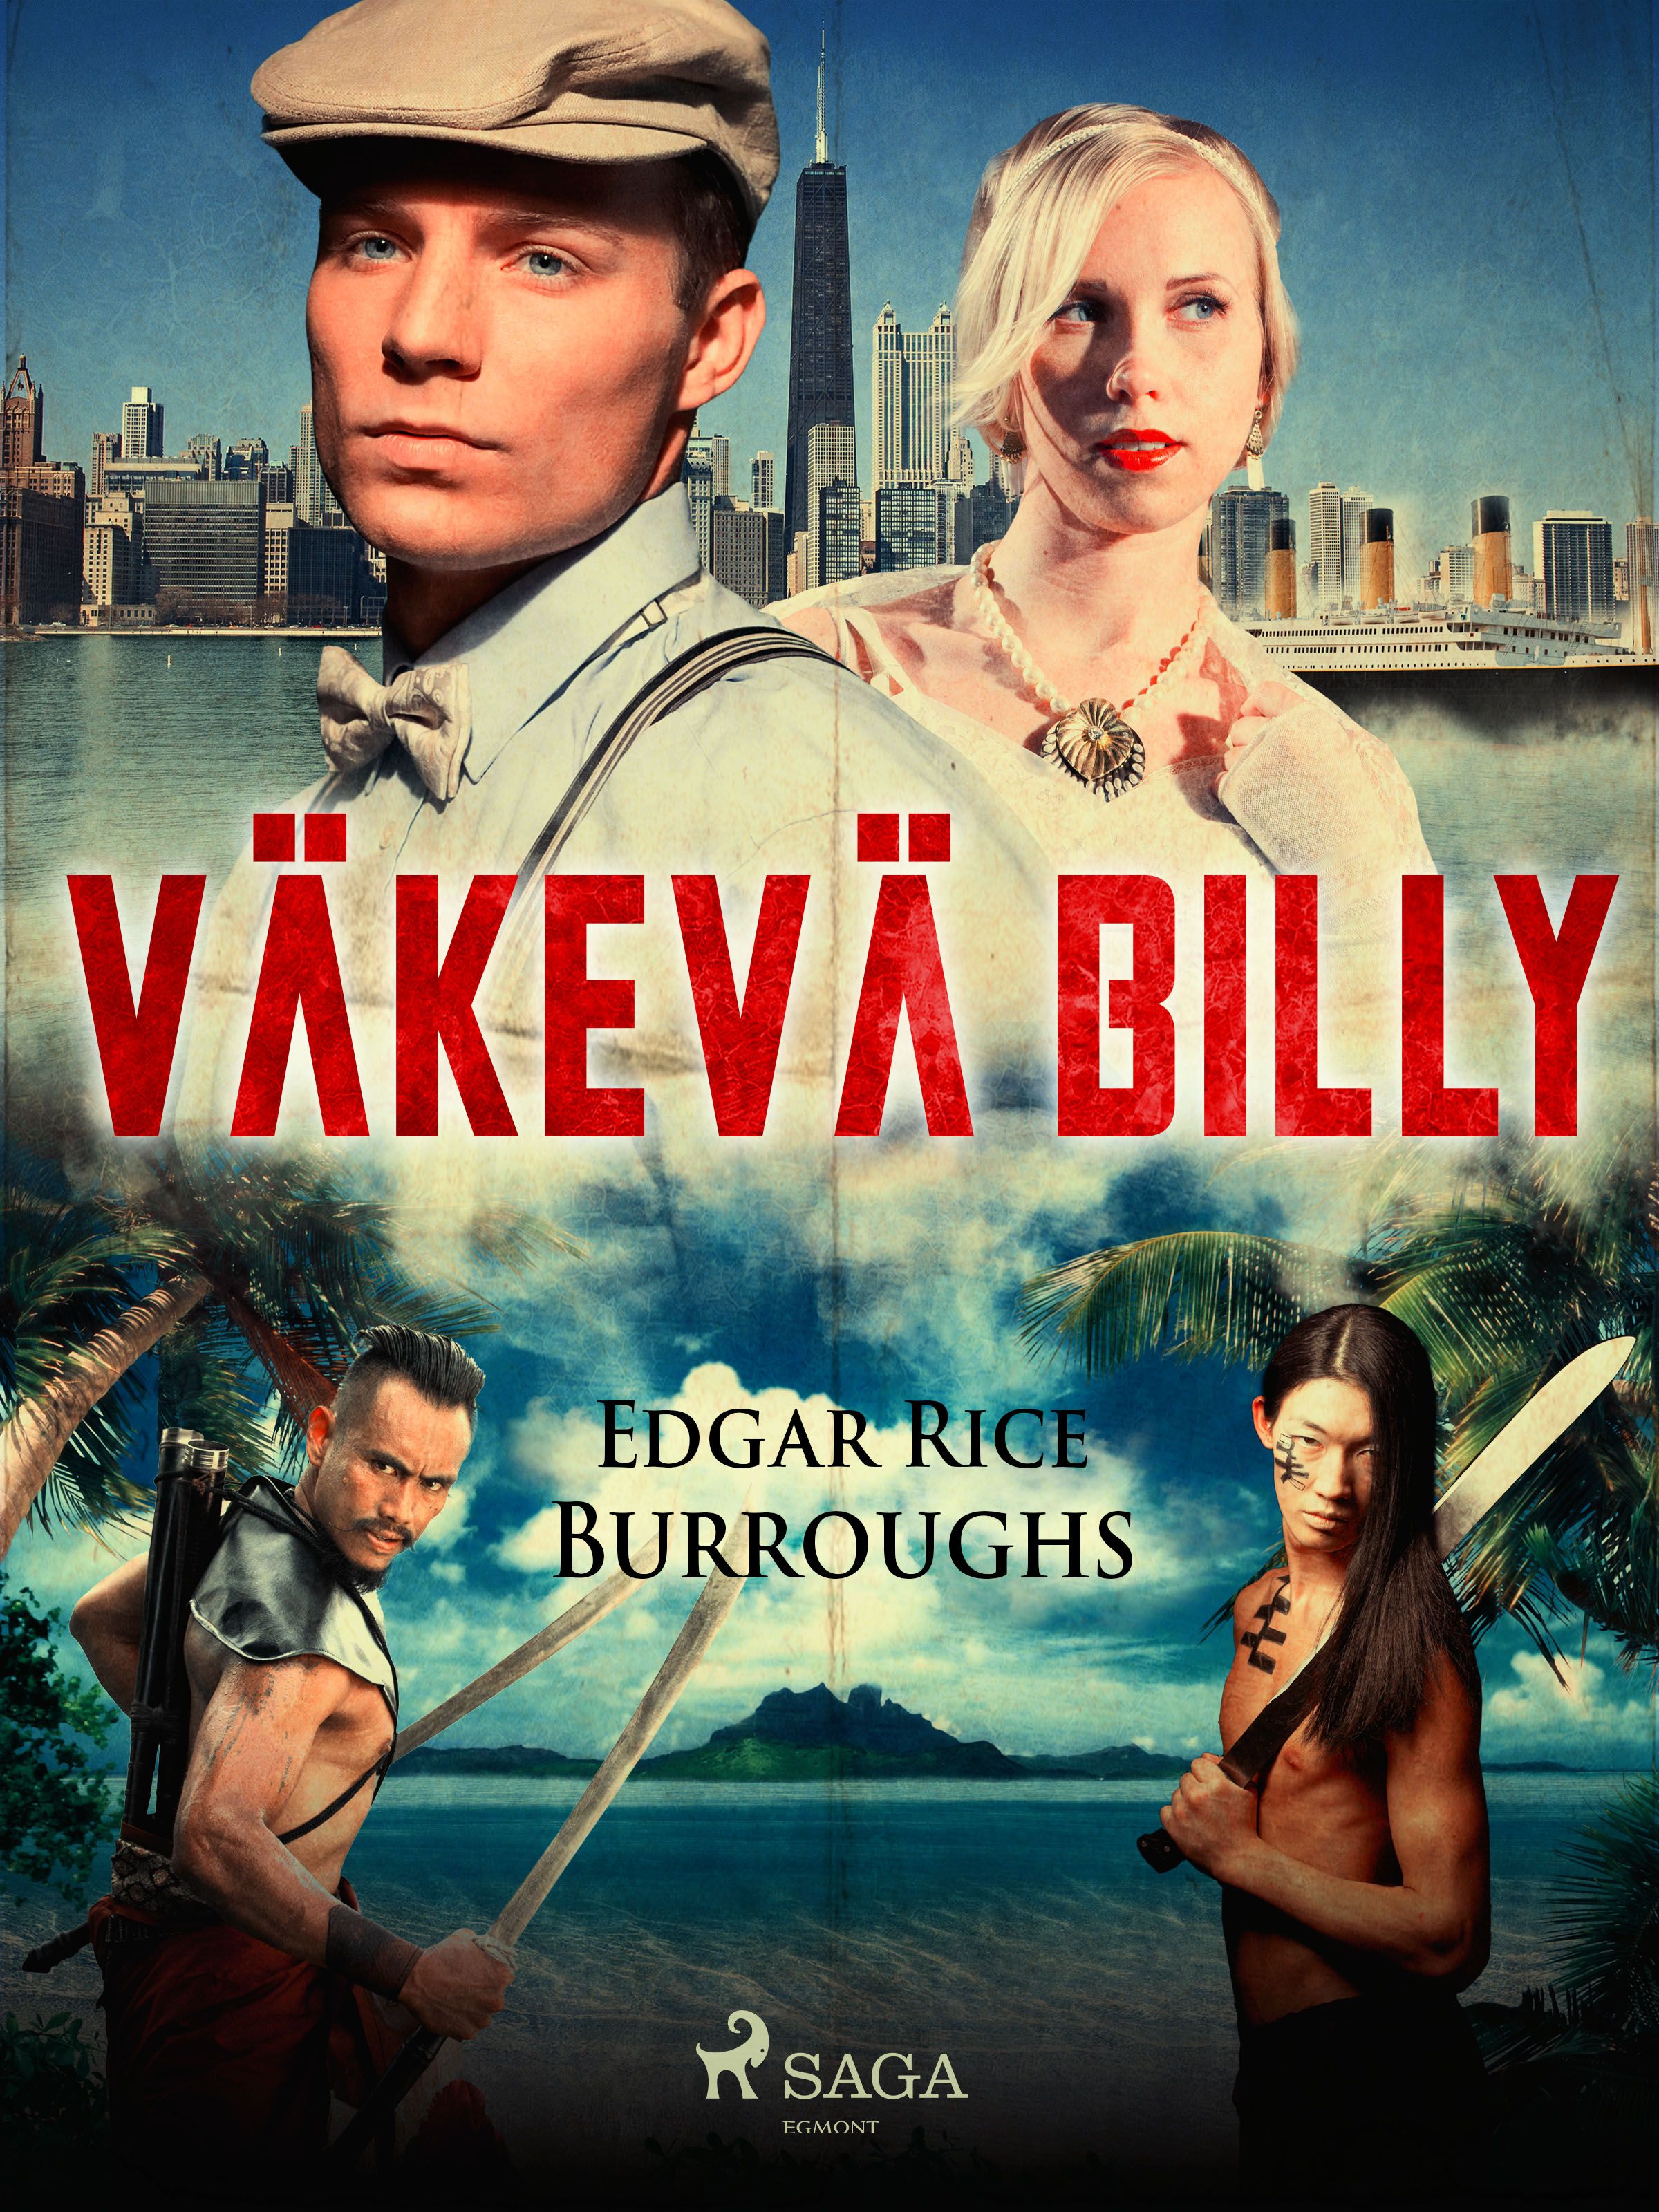 Väkevä Billy, e-bok av Edgar Rice Burroughs